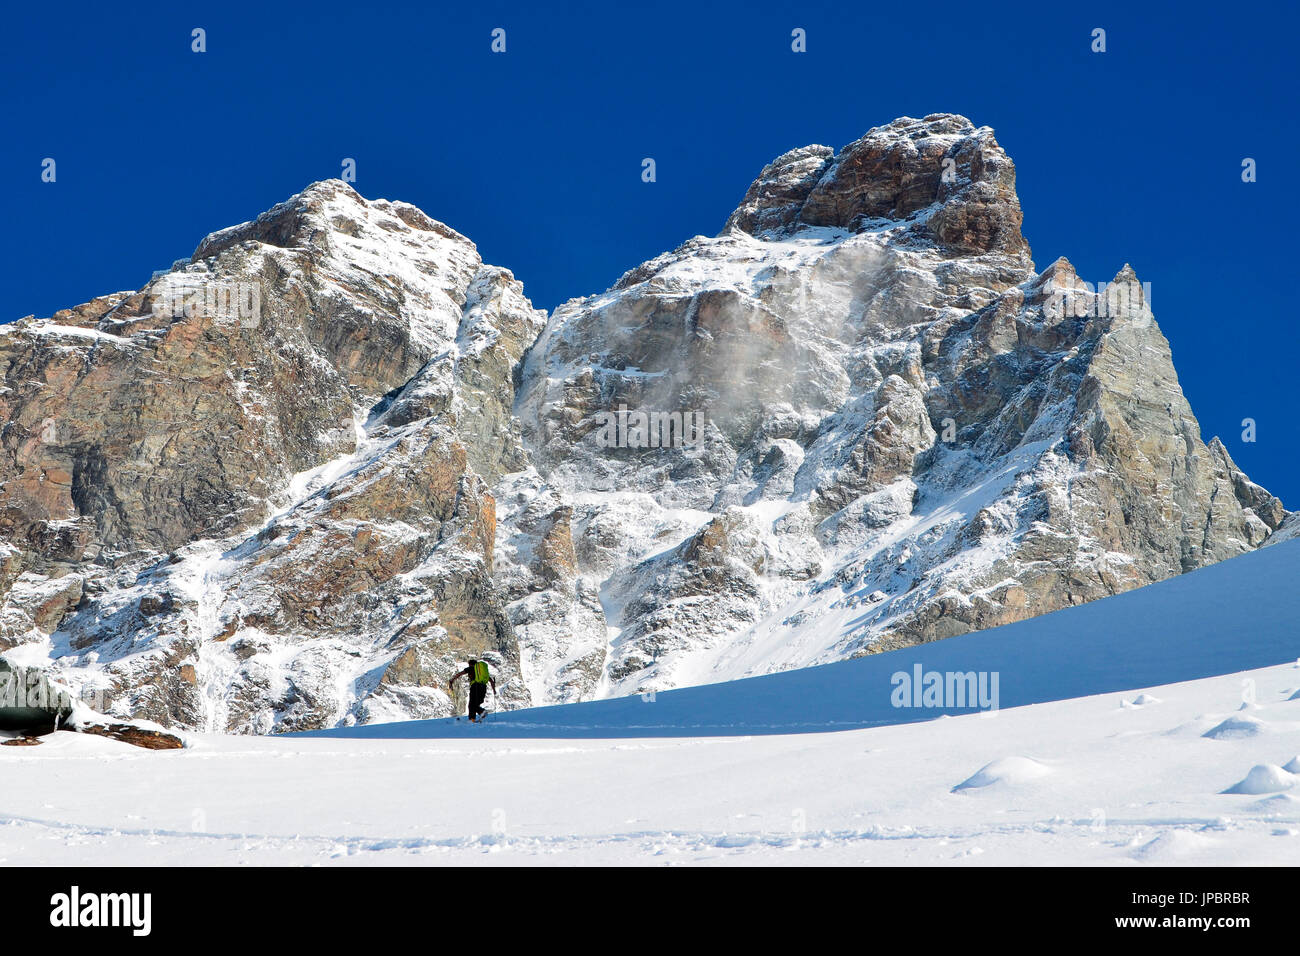 Ski montaineering e Cervino (Matterhorn) in primavera, Cervinia,Valle d'Aosta, Italia Foto Stock